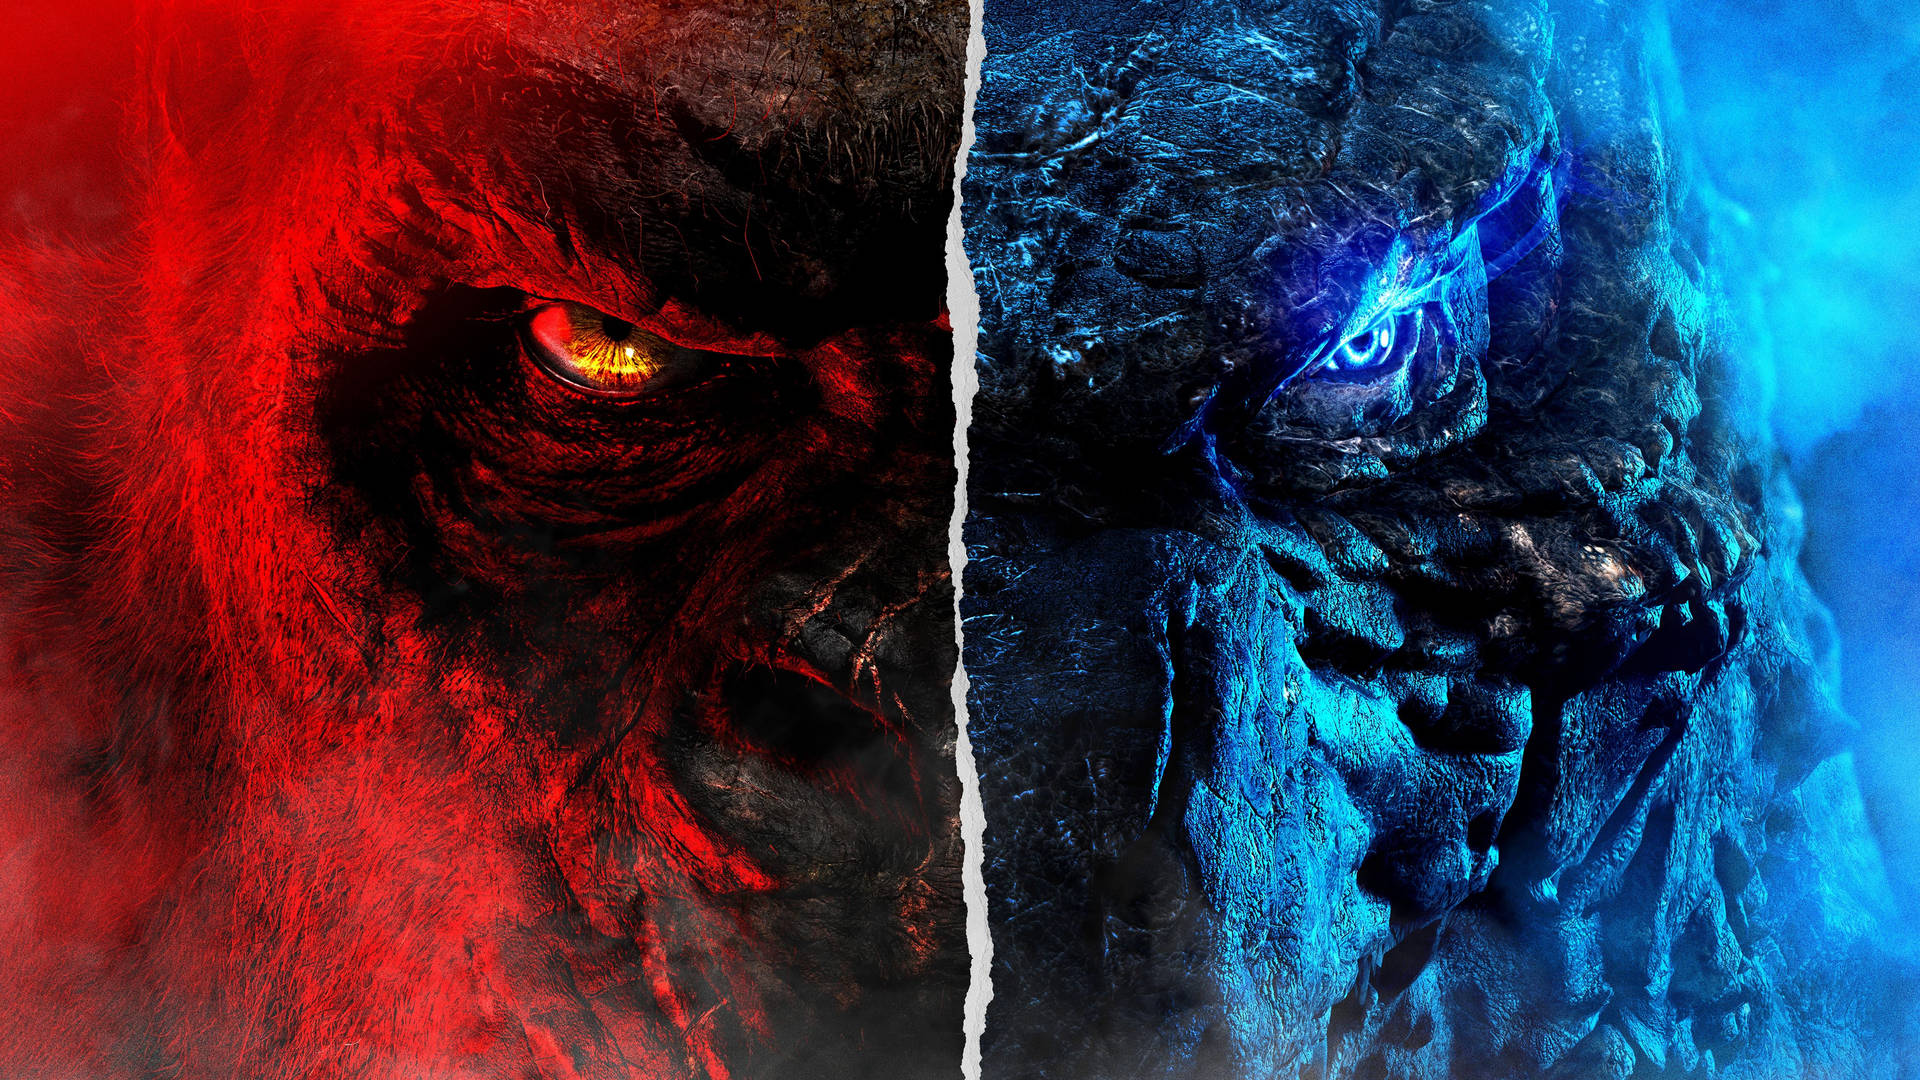 Einrotes Und Blaues Monster Mit Einem Roten Gesicht. Wallpaper